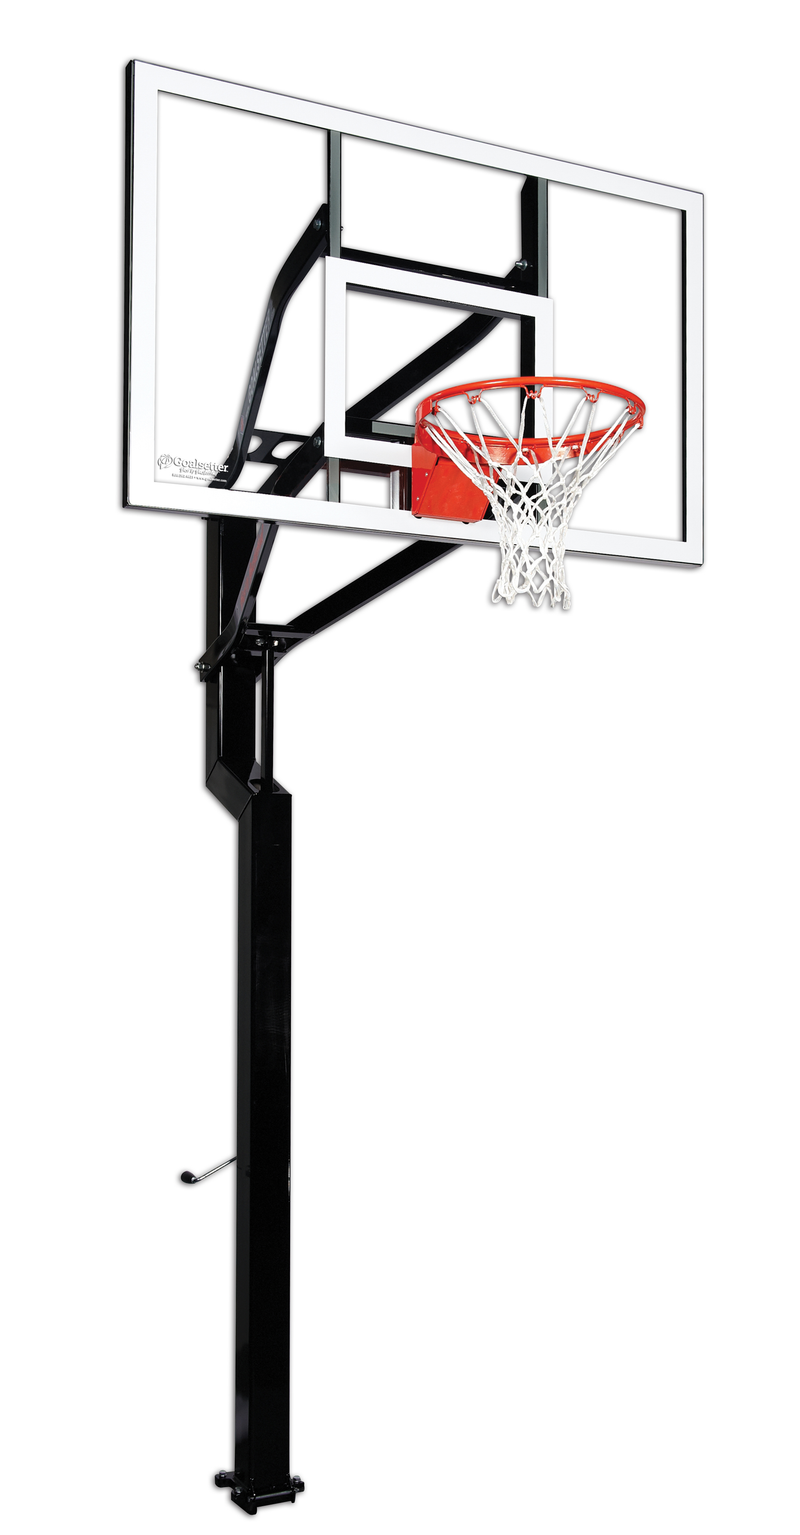 Goaliath 54” Acrylic Wall Mount Basketball Hoop